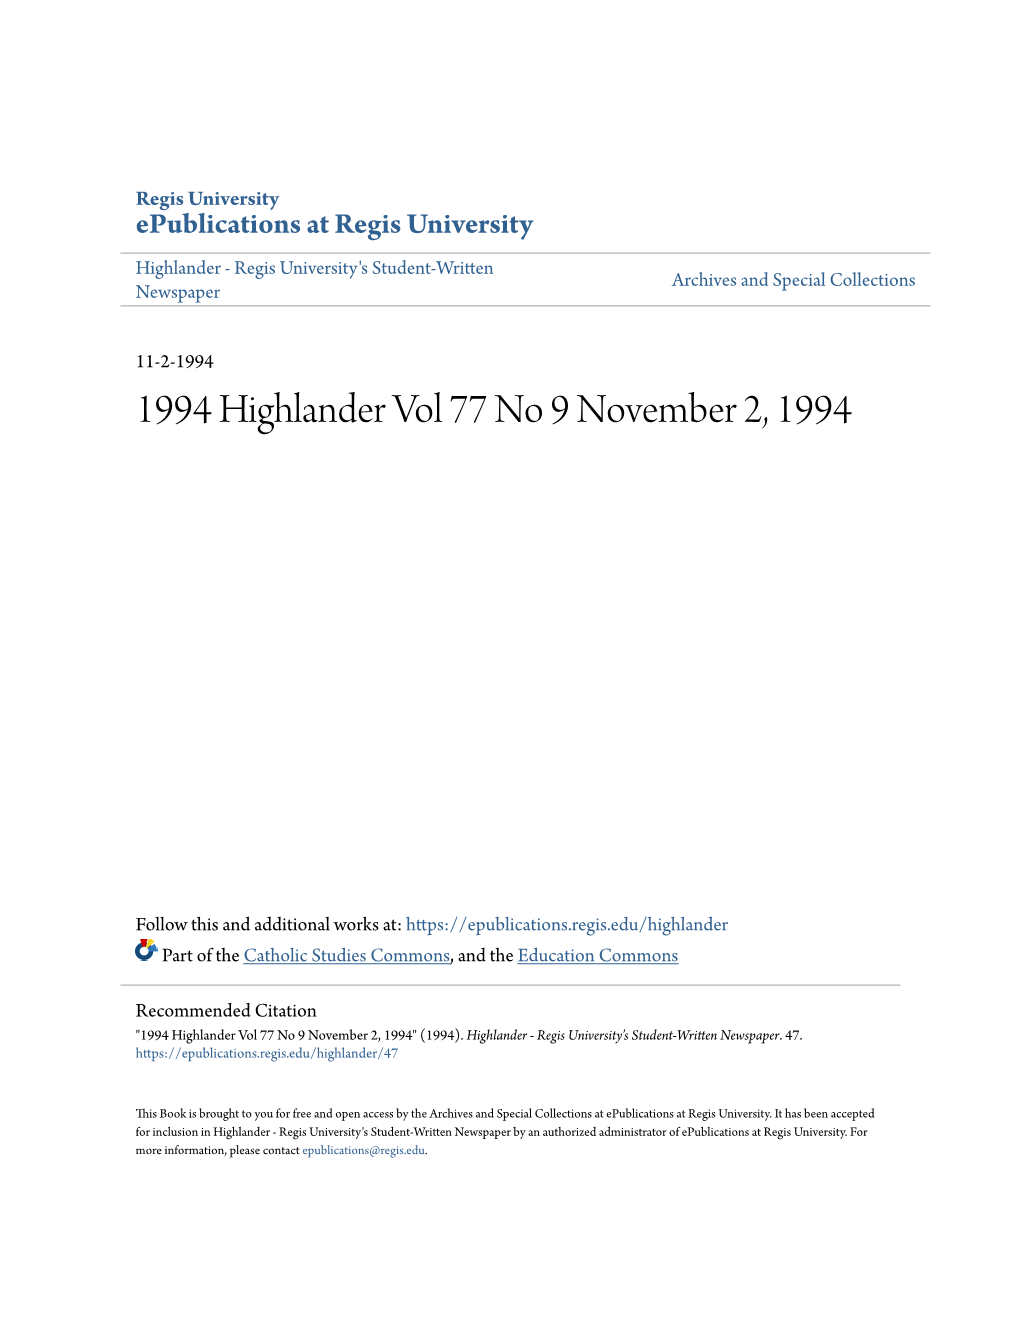 1994 Highlander Vol 77 No 9 November 2, 1994